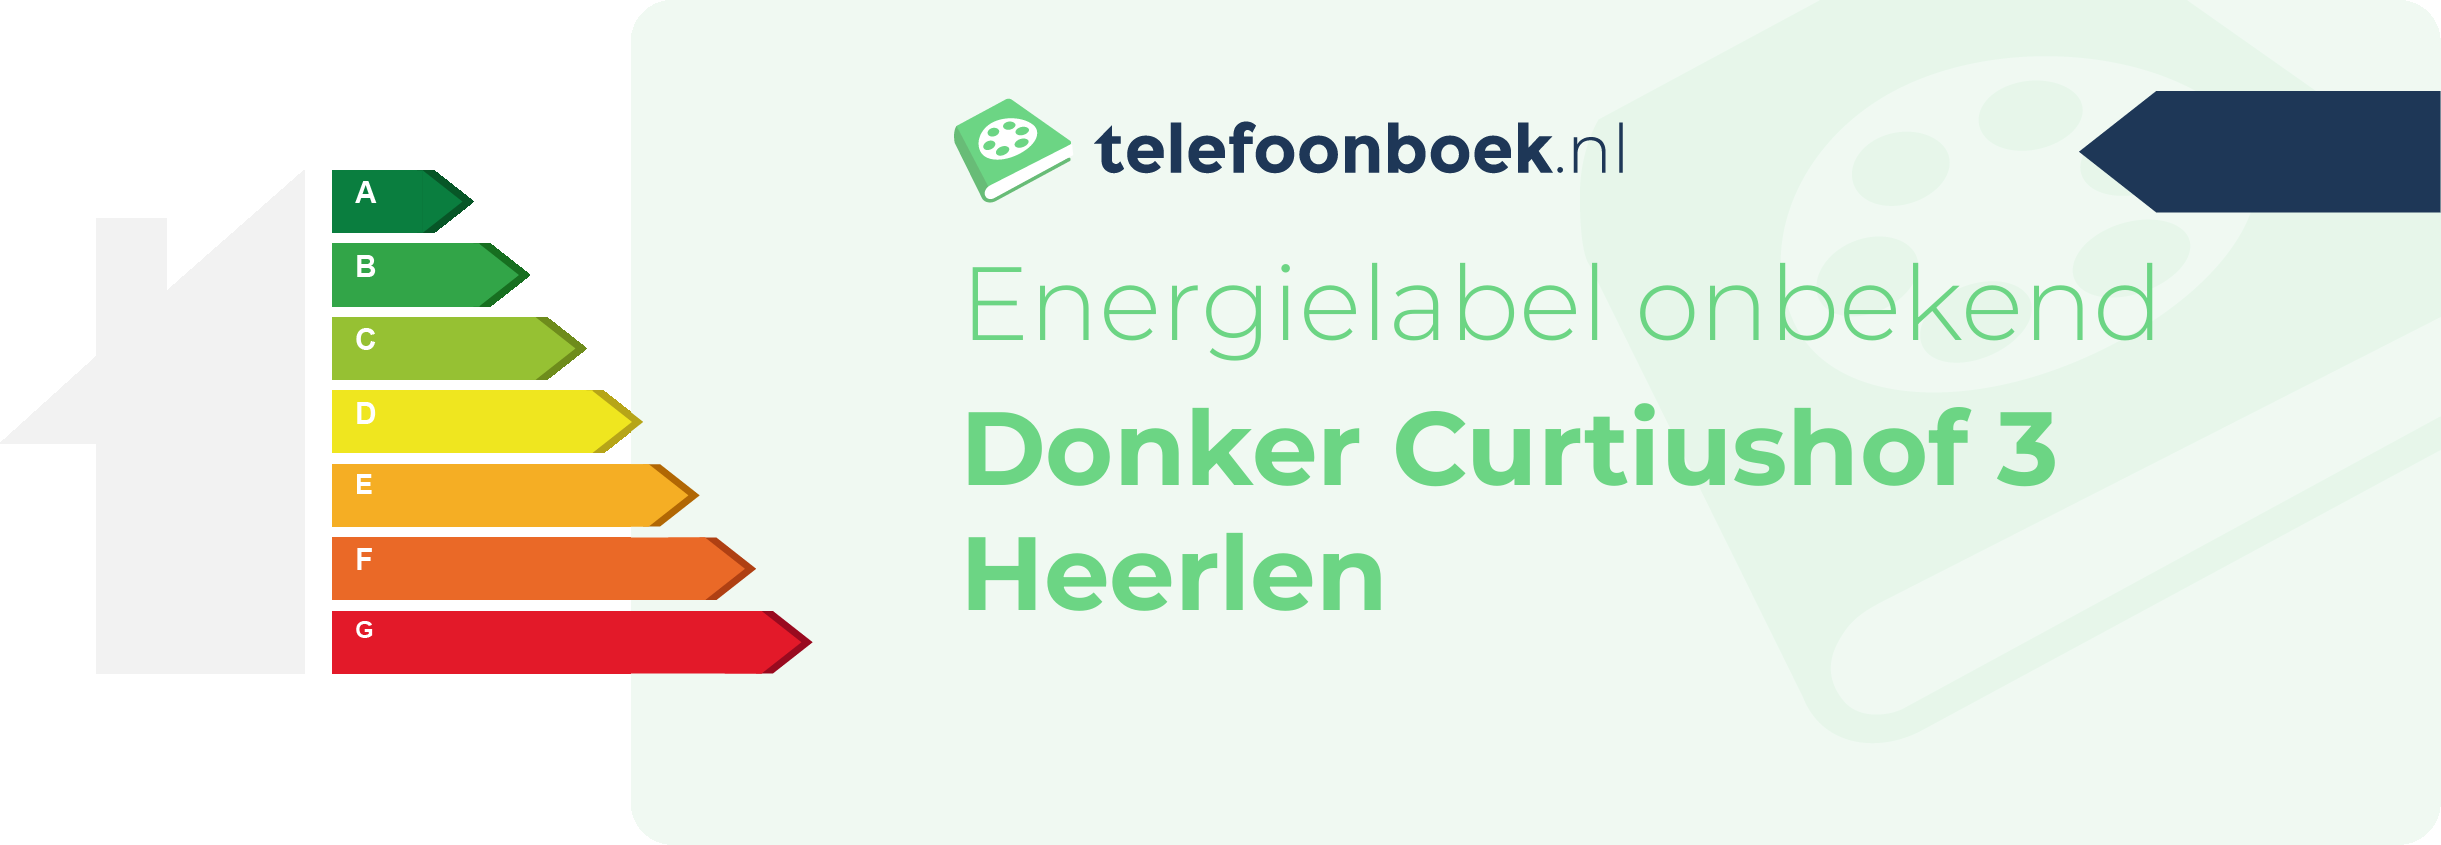 Energielabel Donker Curtiushof 3 Heerlen